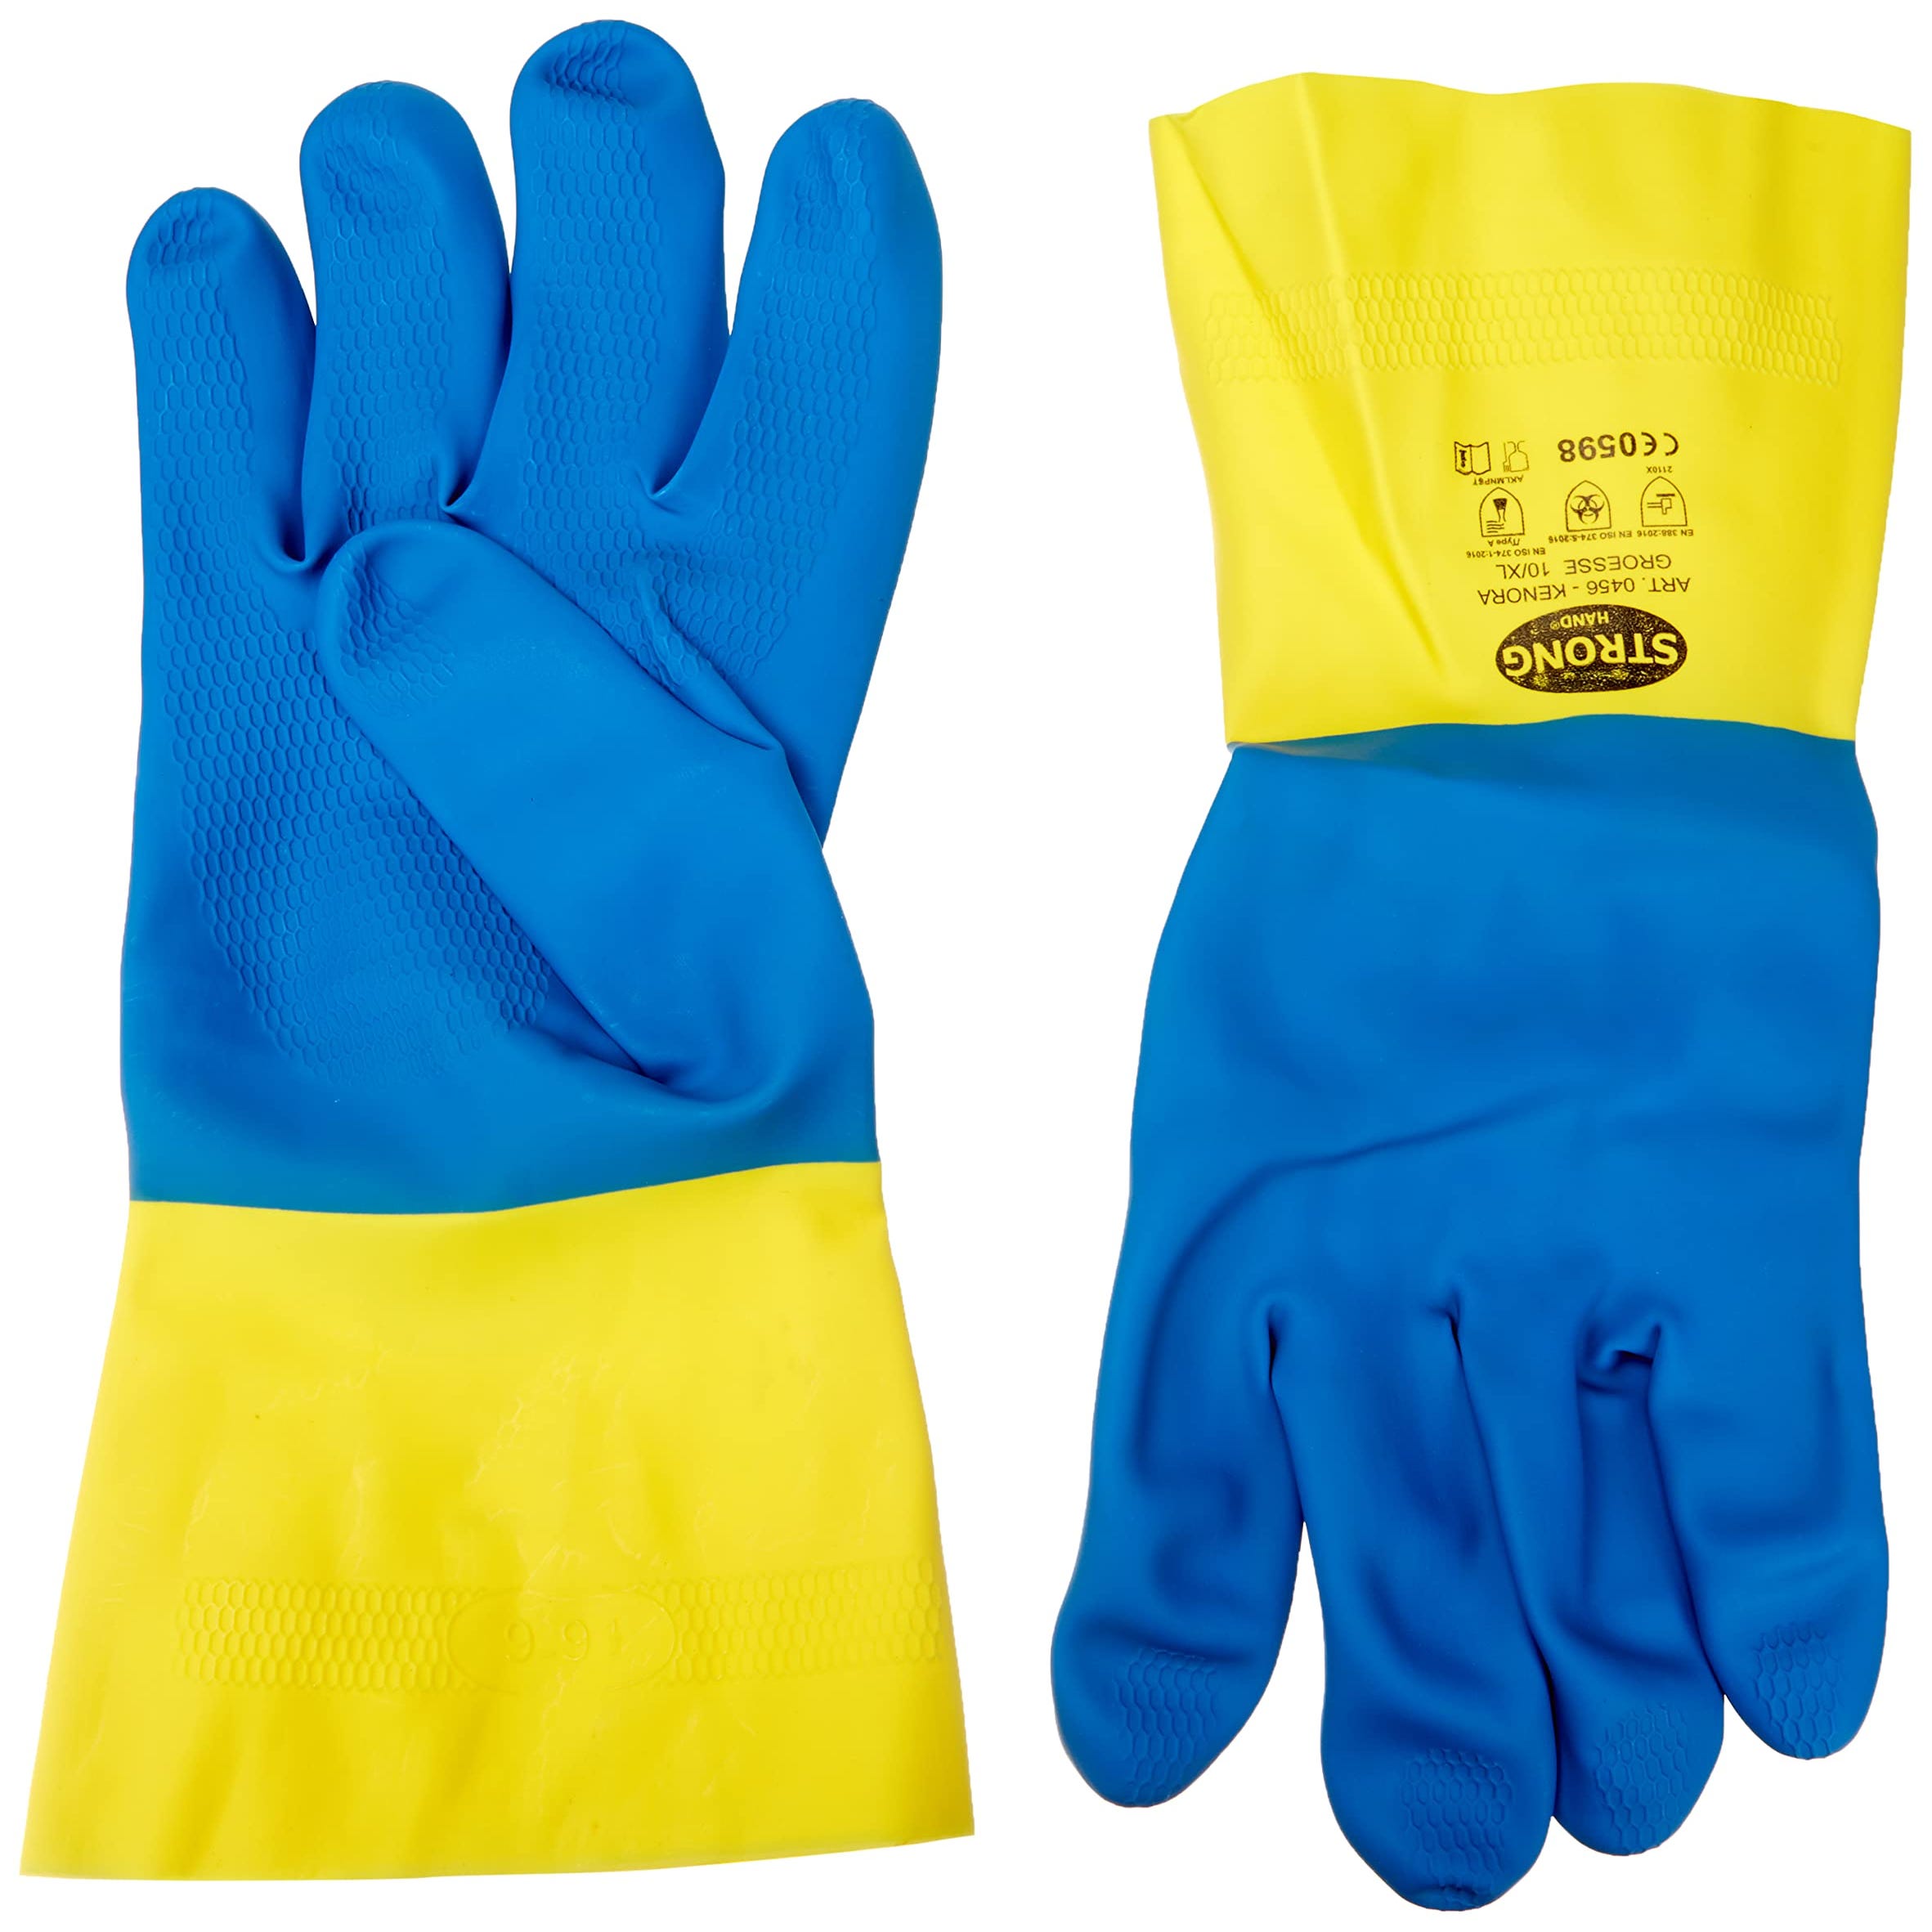 Stronghand Guanti in gomma industriale KENORA, blu, giallo, taglia 10,  adatti per alimenti e agenti chimici